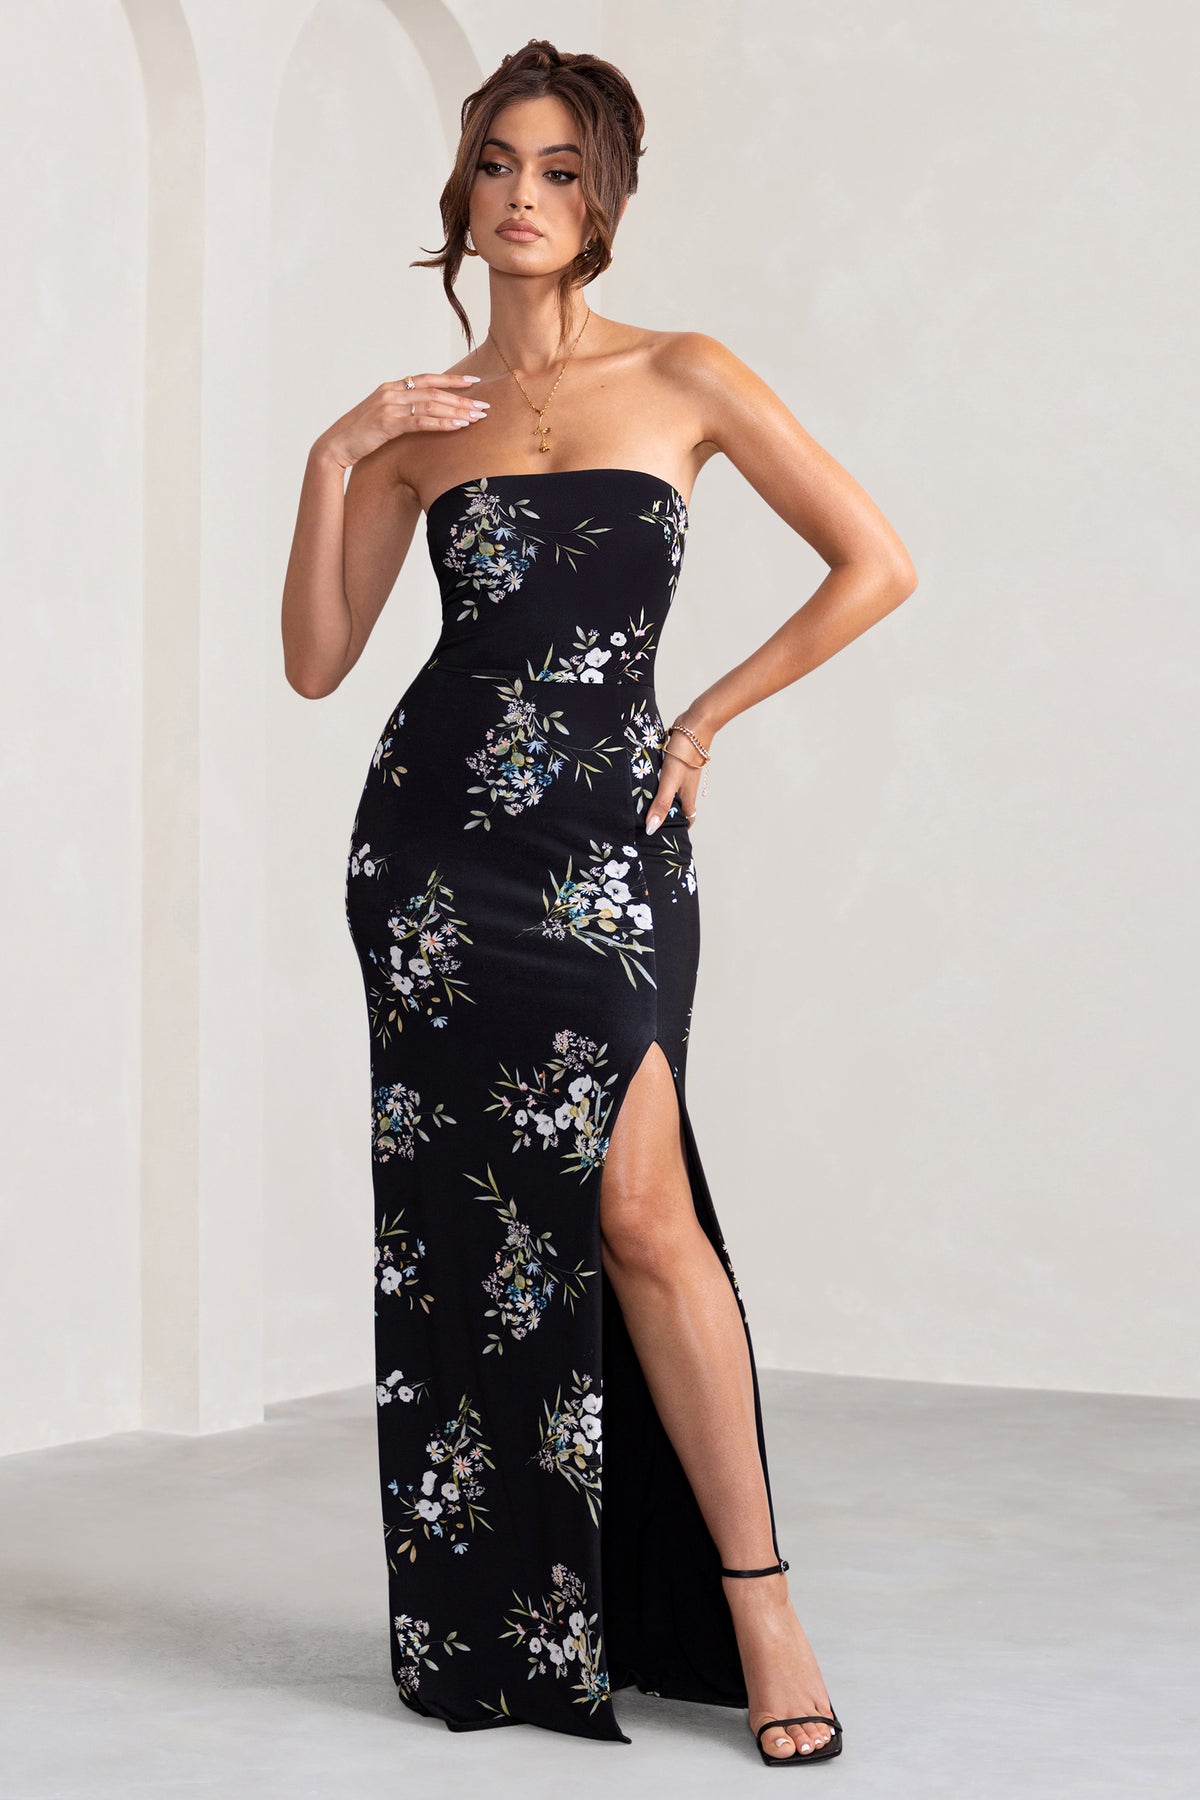 YOURS LONDON Plus Size Black Floral Print Sequin Bodysuit